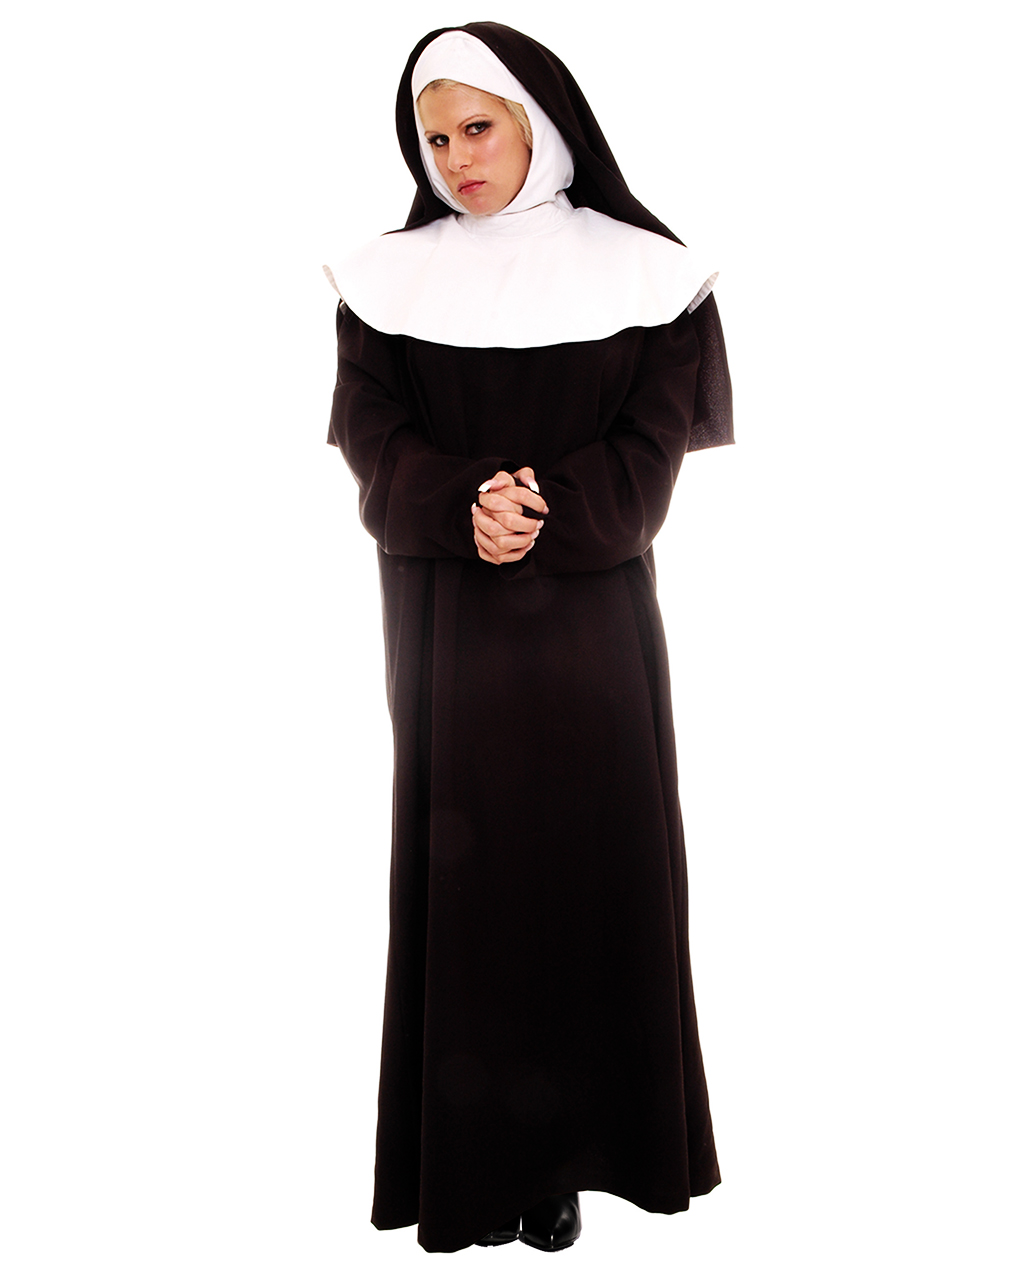 Nun costume | Nun Costume | Nun costume | horror-shop.com